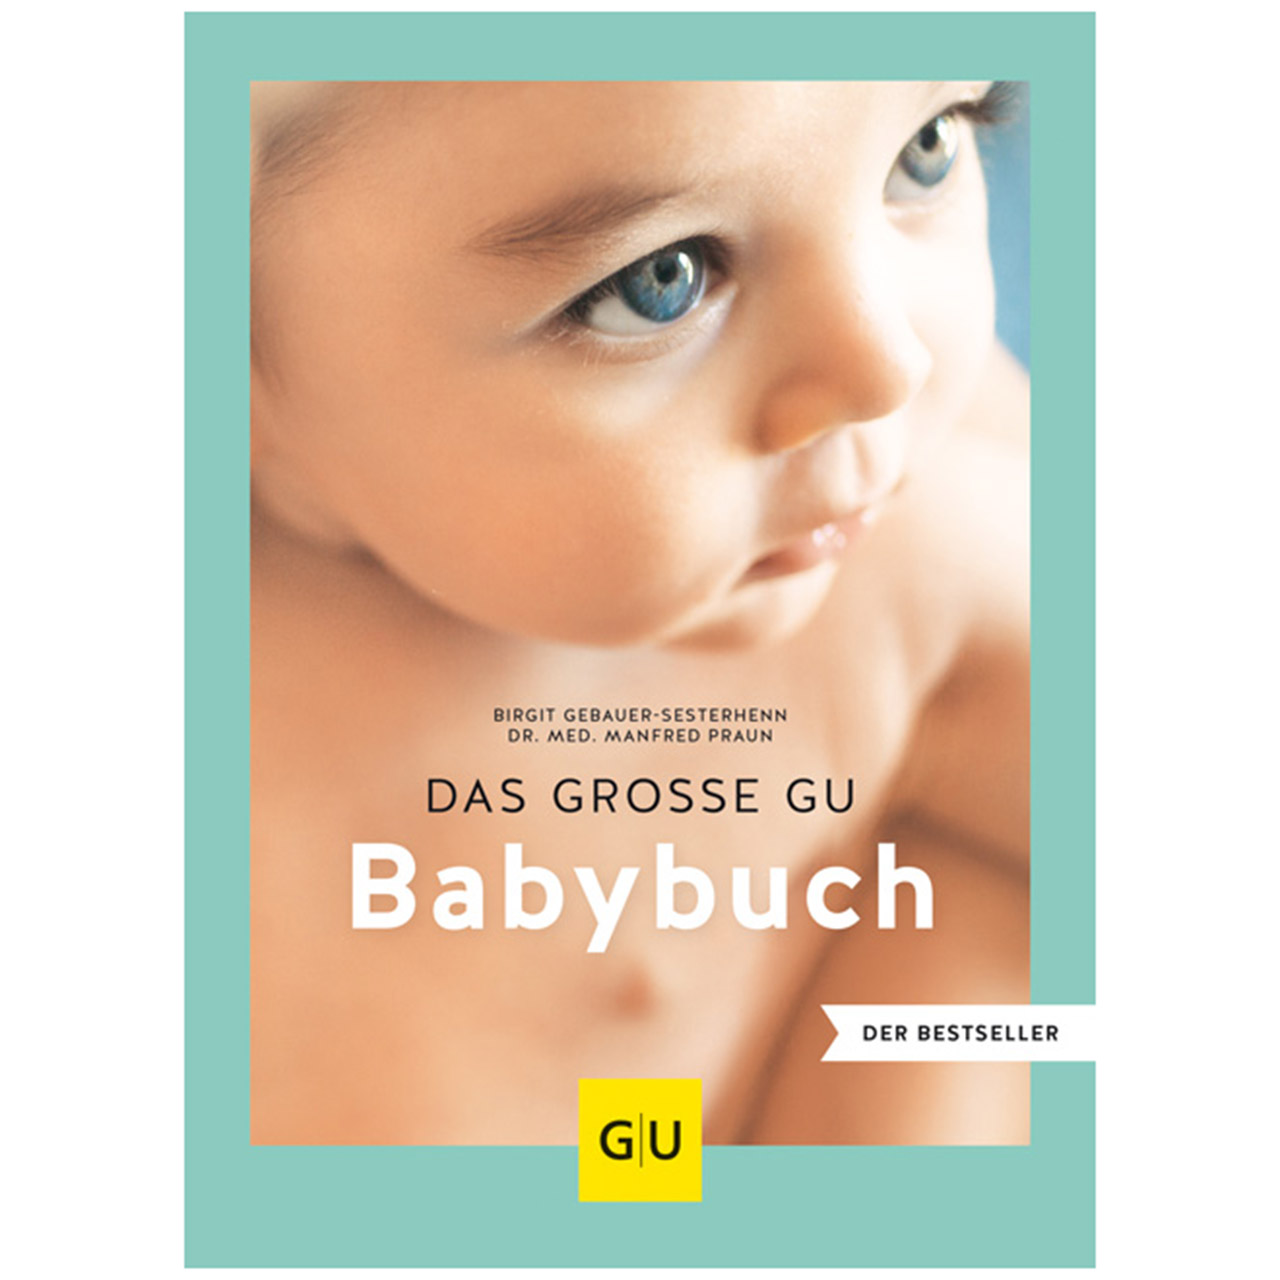 Bestseller! Das große GU Babybuch